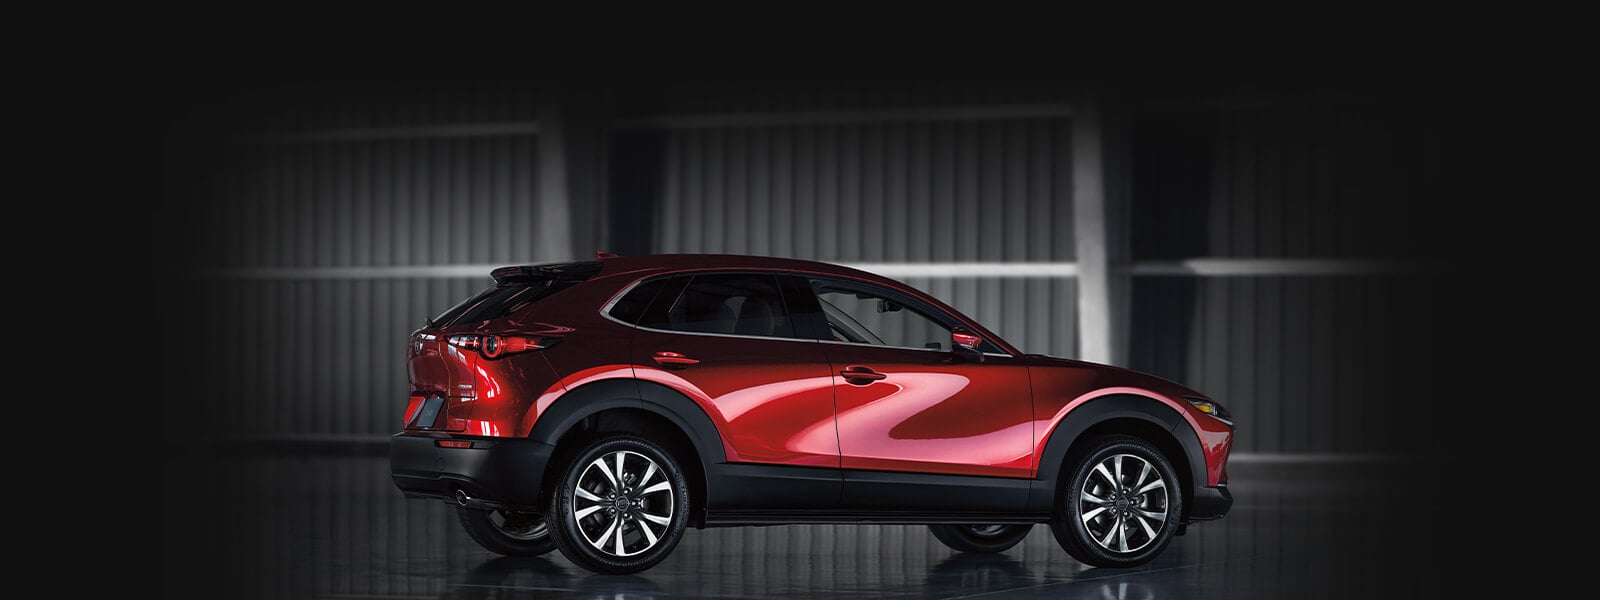 VUS Mazda rouge vibrant cristal, présenté de profil côté passager sur fond sombre